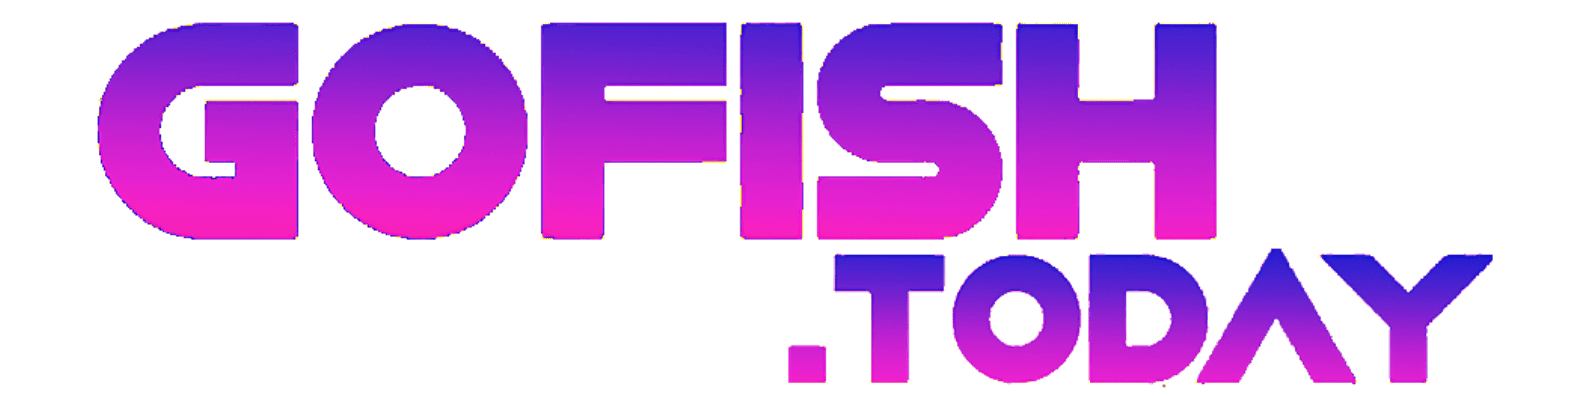 Gft Fish Game Logo